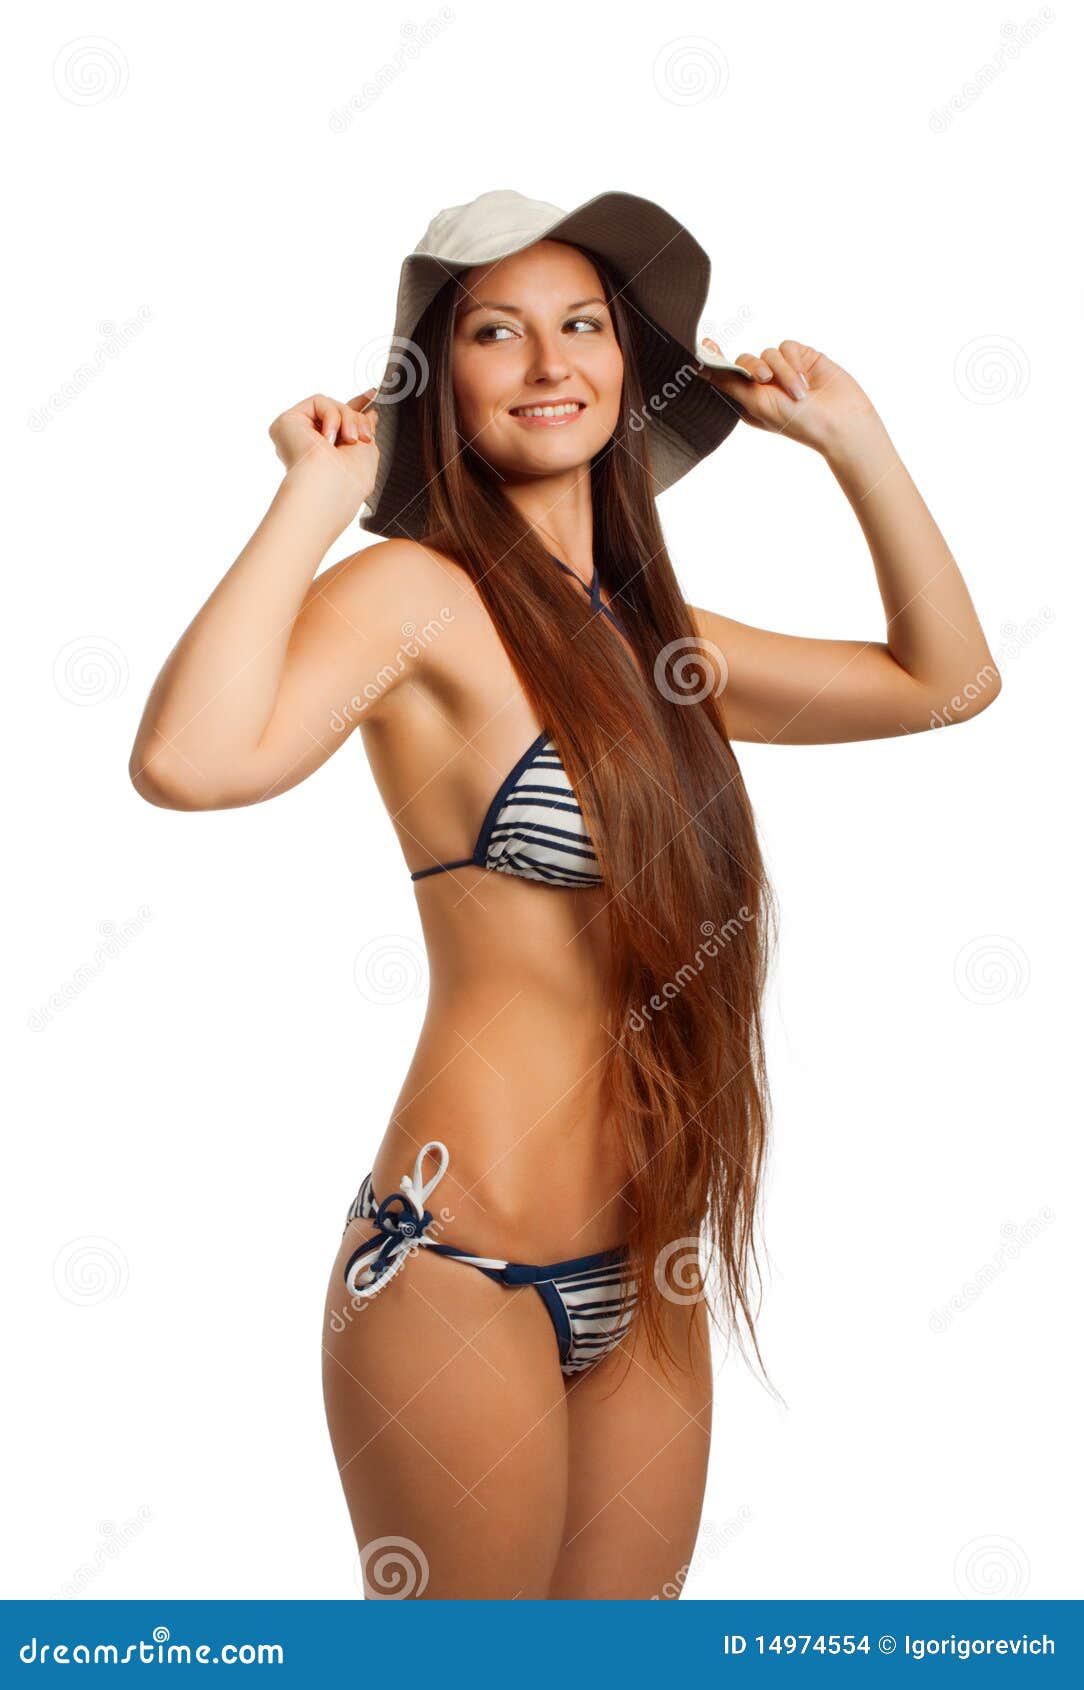 Funny bikini girl stock photo. Image of isolated, happiness - 14974554